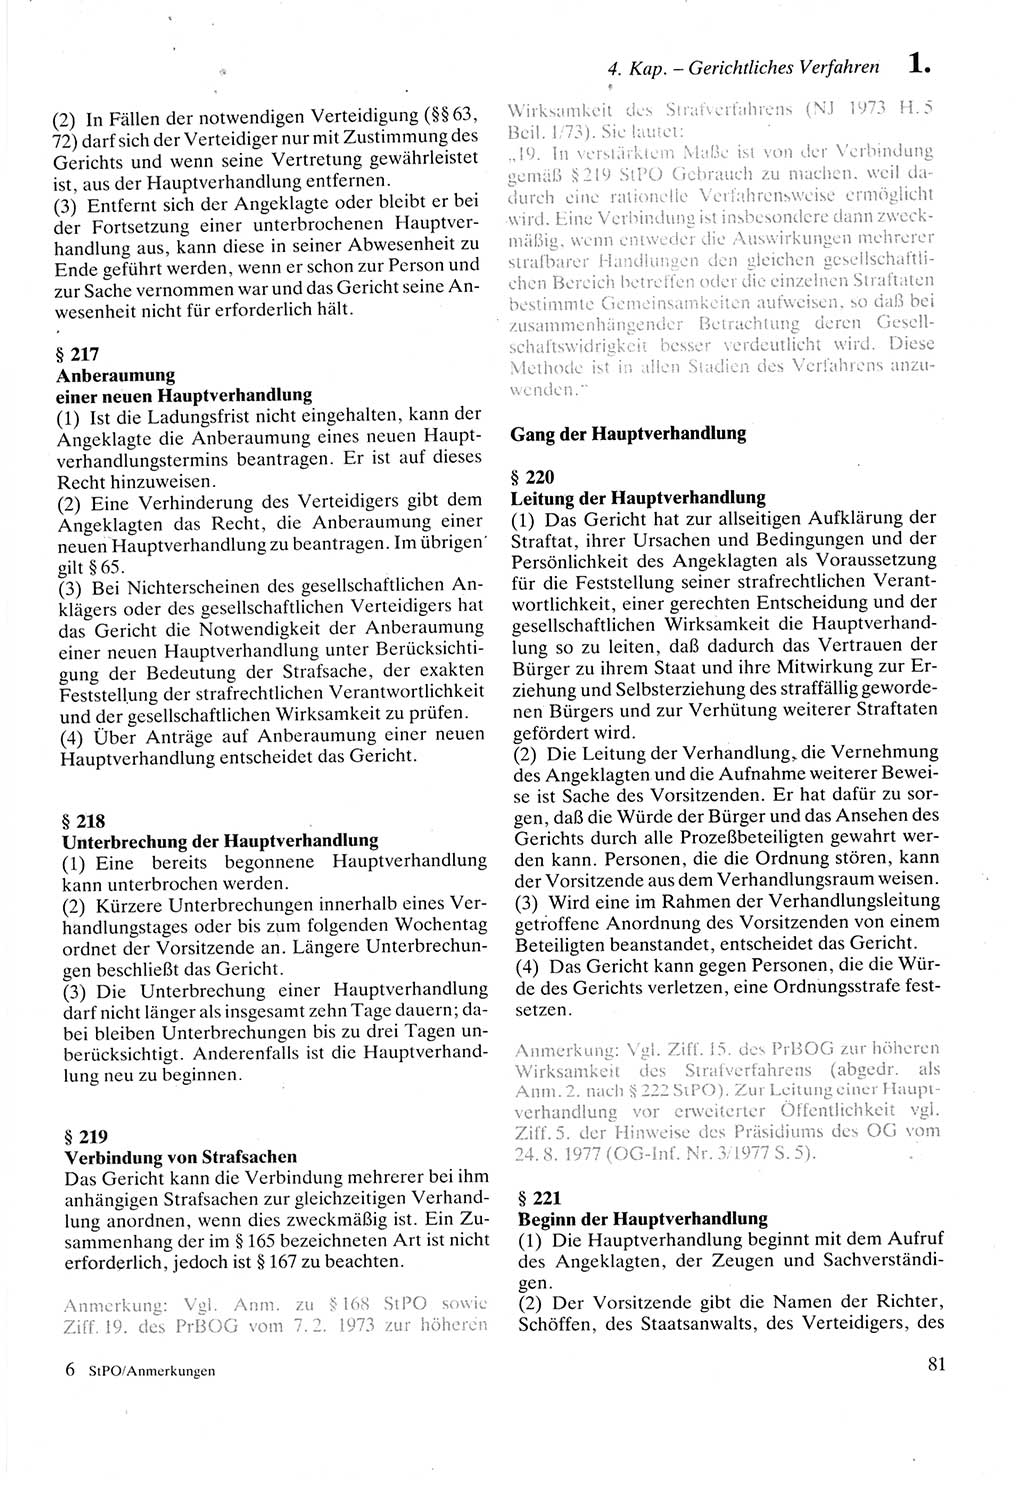 Strafprozeßordnung (StPO) der Deutschen Demokratischen Republik (DDR) sowie angrenzende Gesetze und Bestimmungen 1987, Seite 81 (StPO DDR Ges. Best. 1987, S. 81)